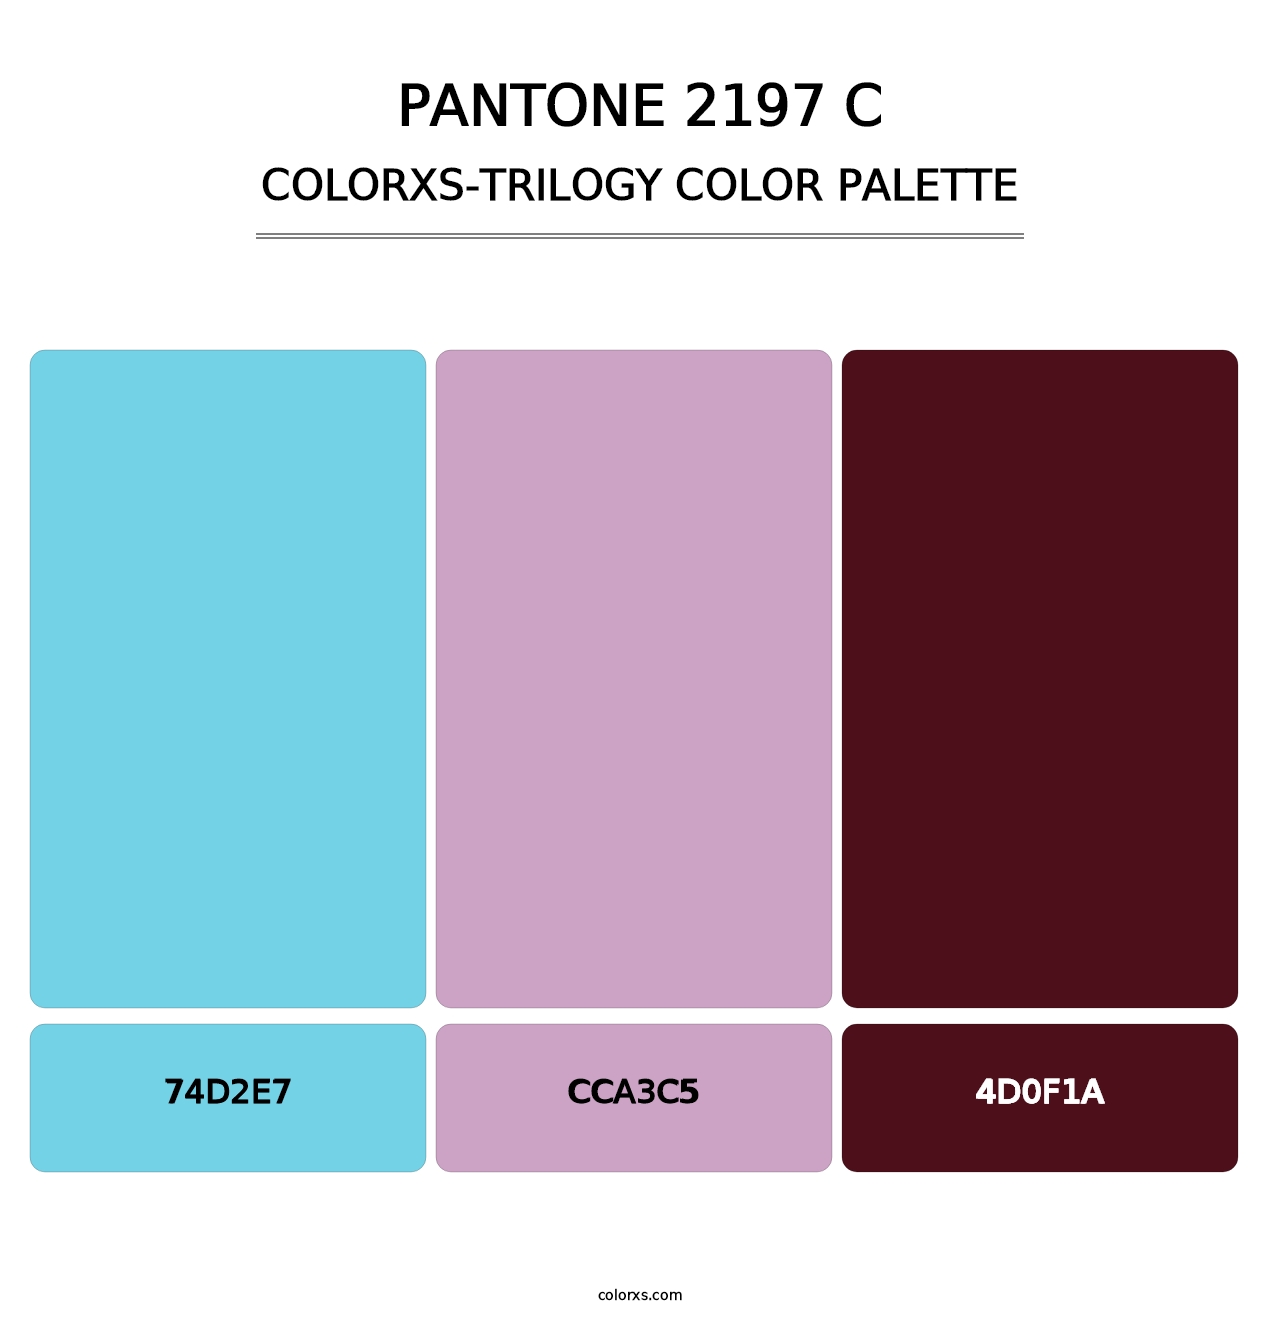 PANTONE 2197 C - Colorxs Trilogy Palette